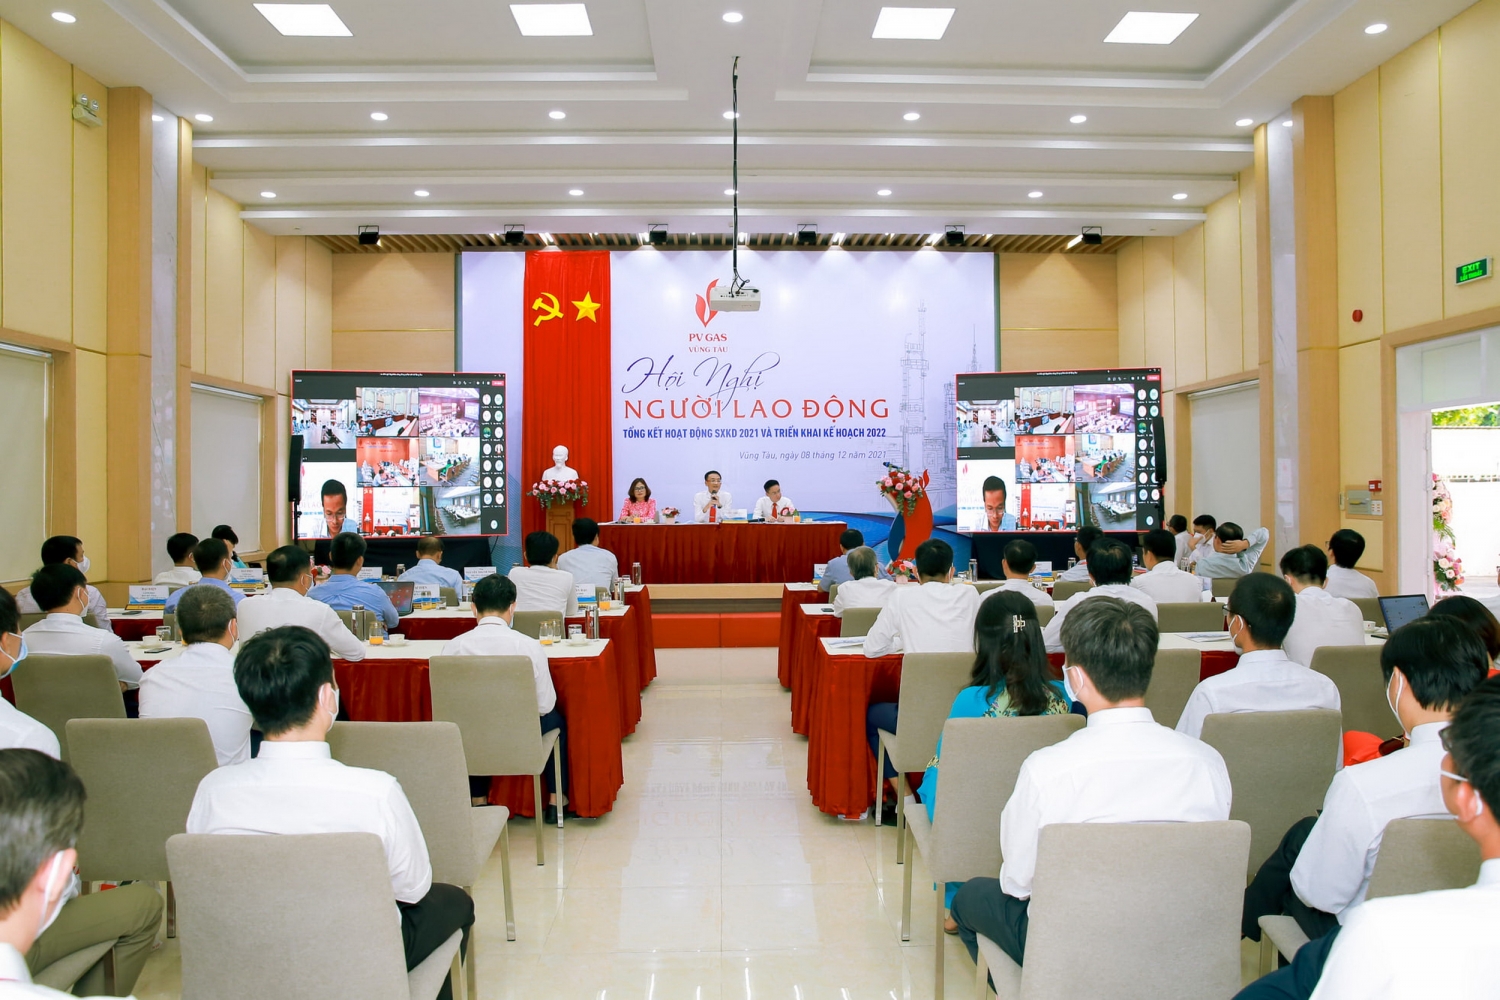 Công ty Chế biến Khí Vũng Tàu tổ chức Hội nghị Người lao động bằng hình thức trực tiếp & trực tuyến